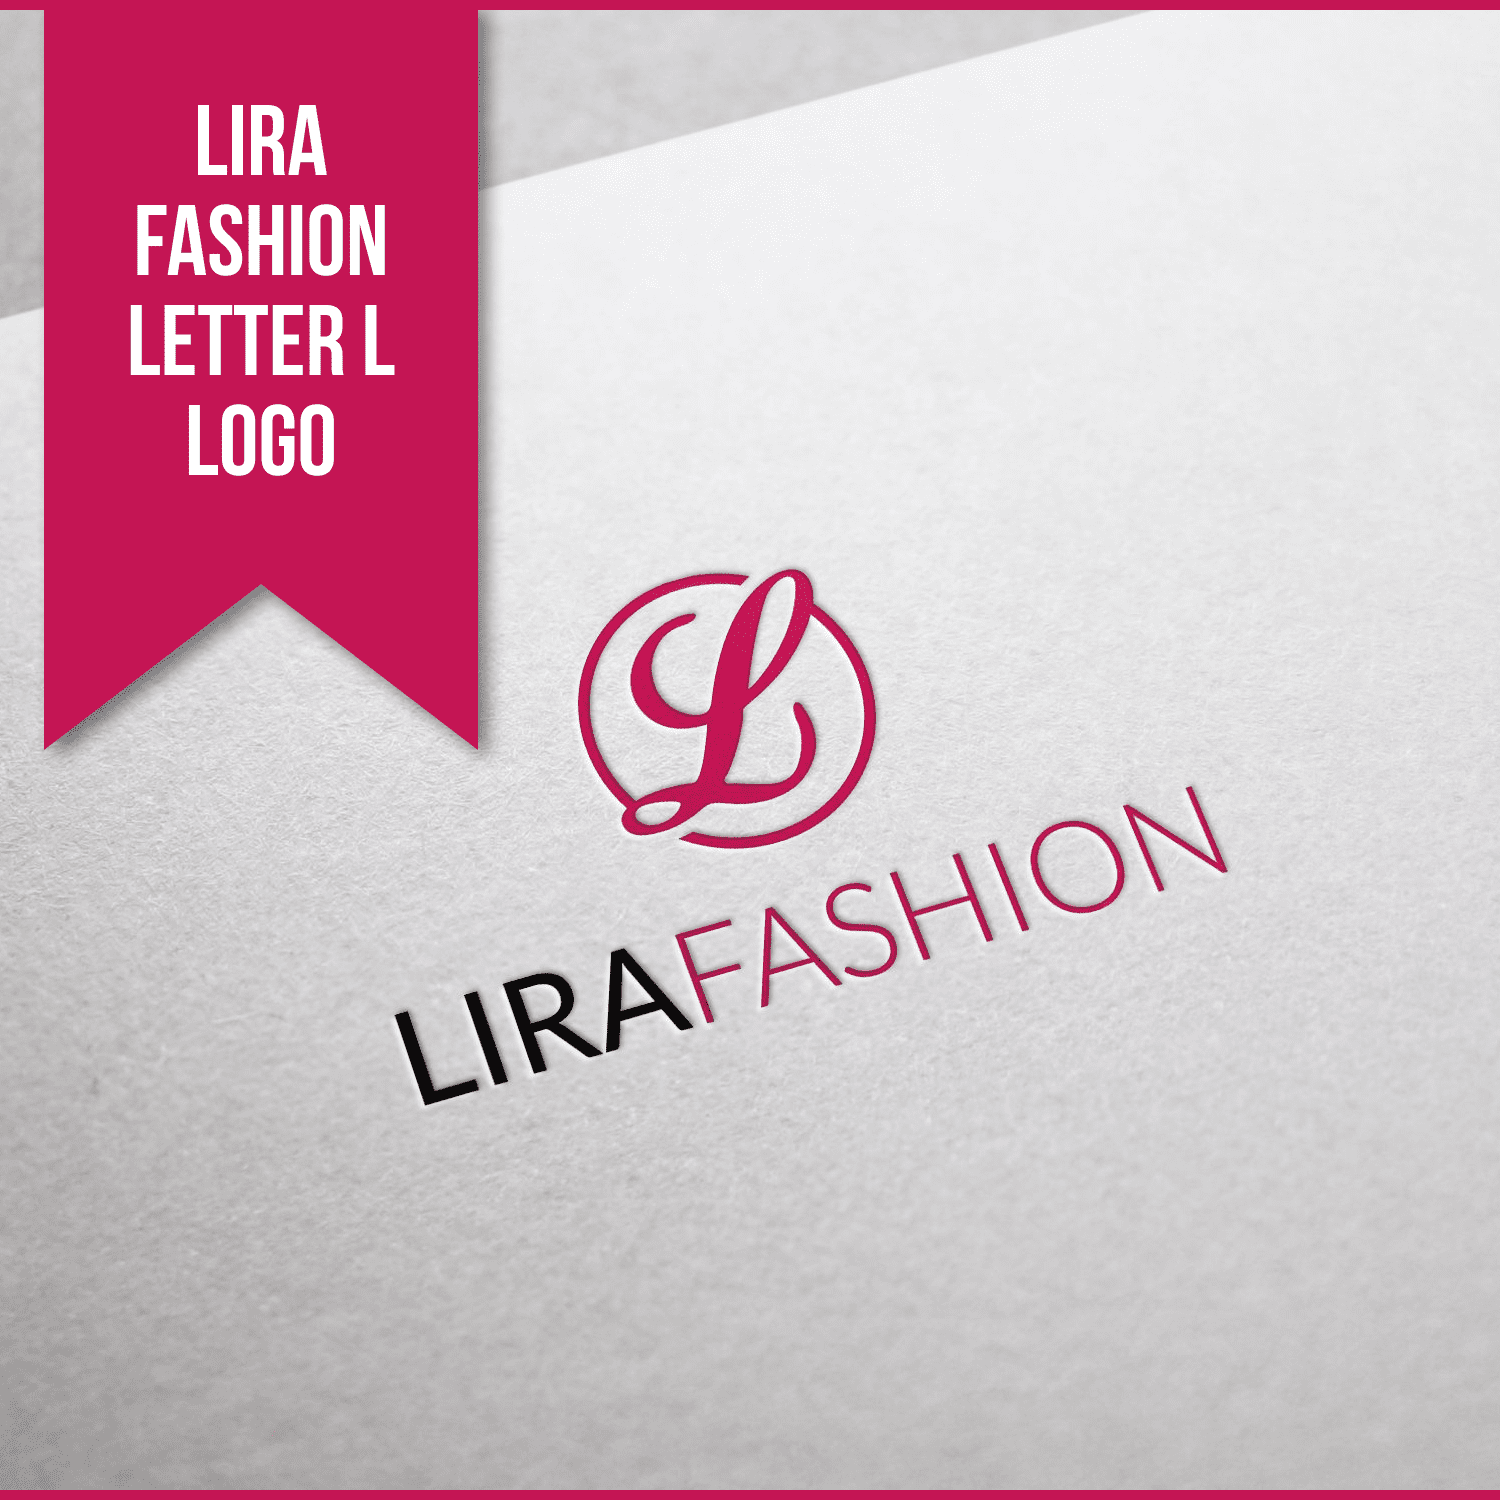 Lira Fashion Letter L Logo.